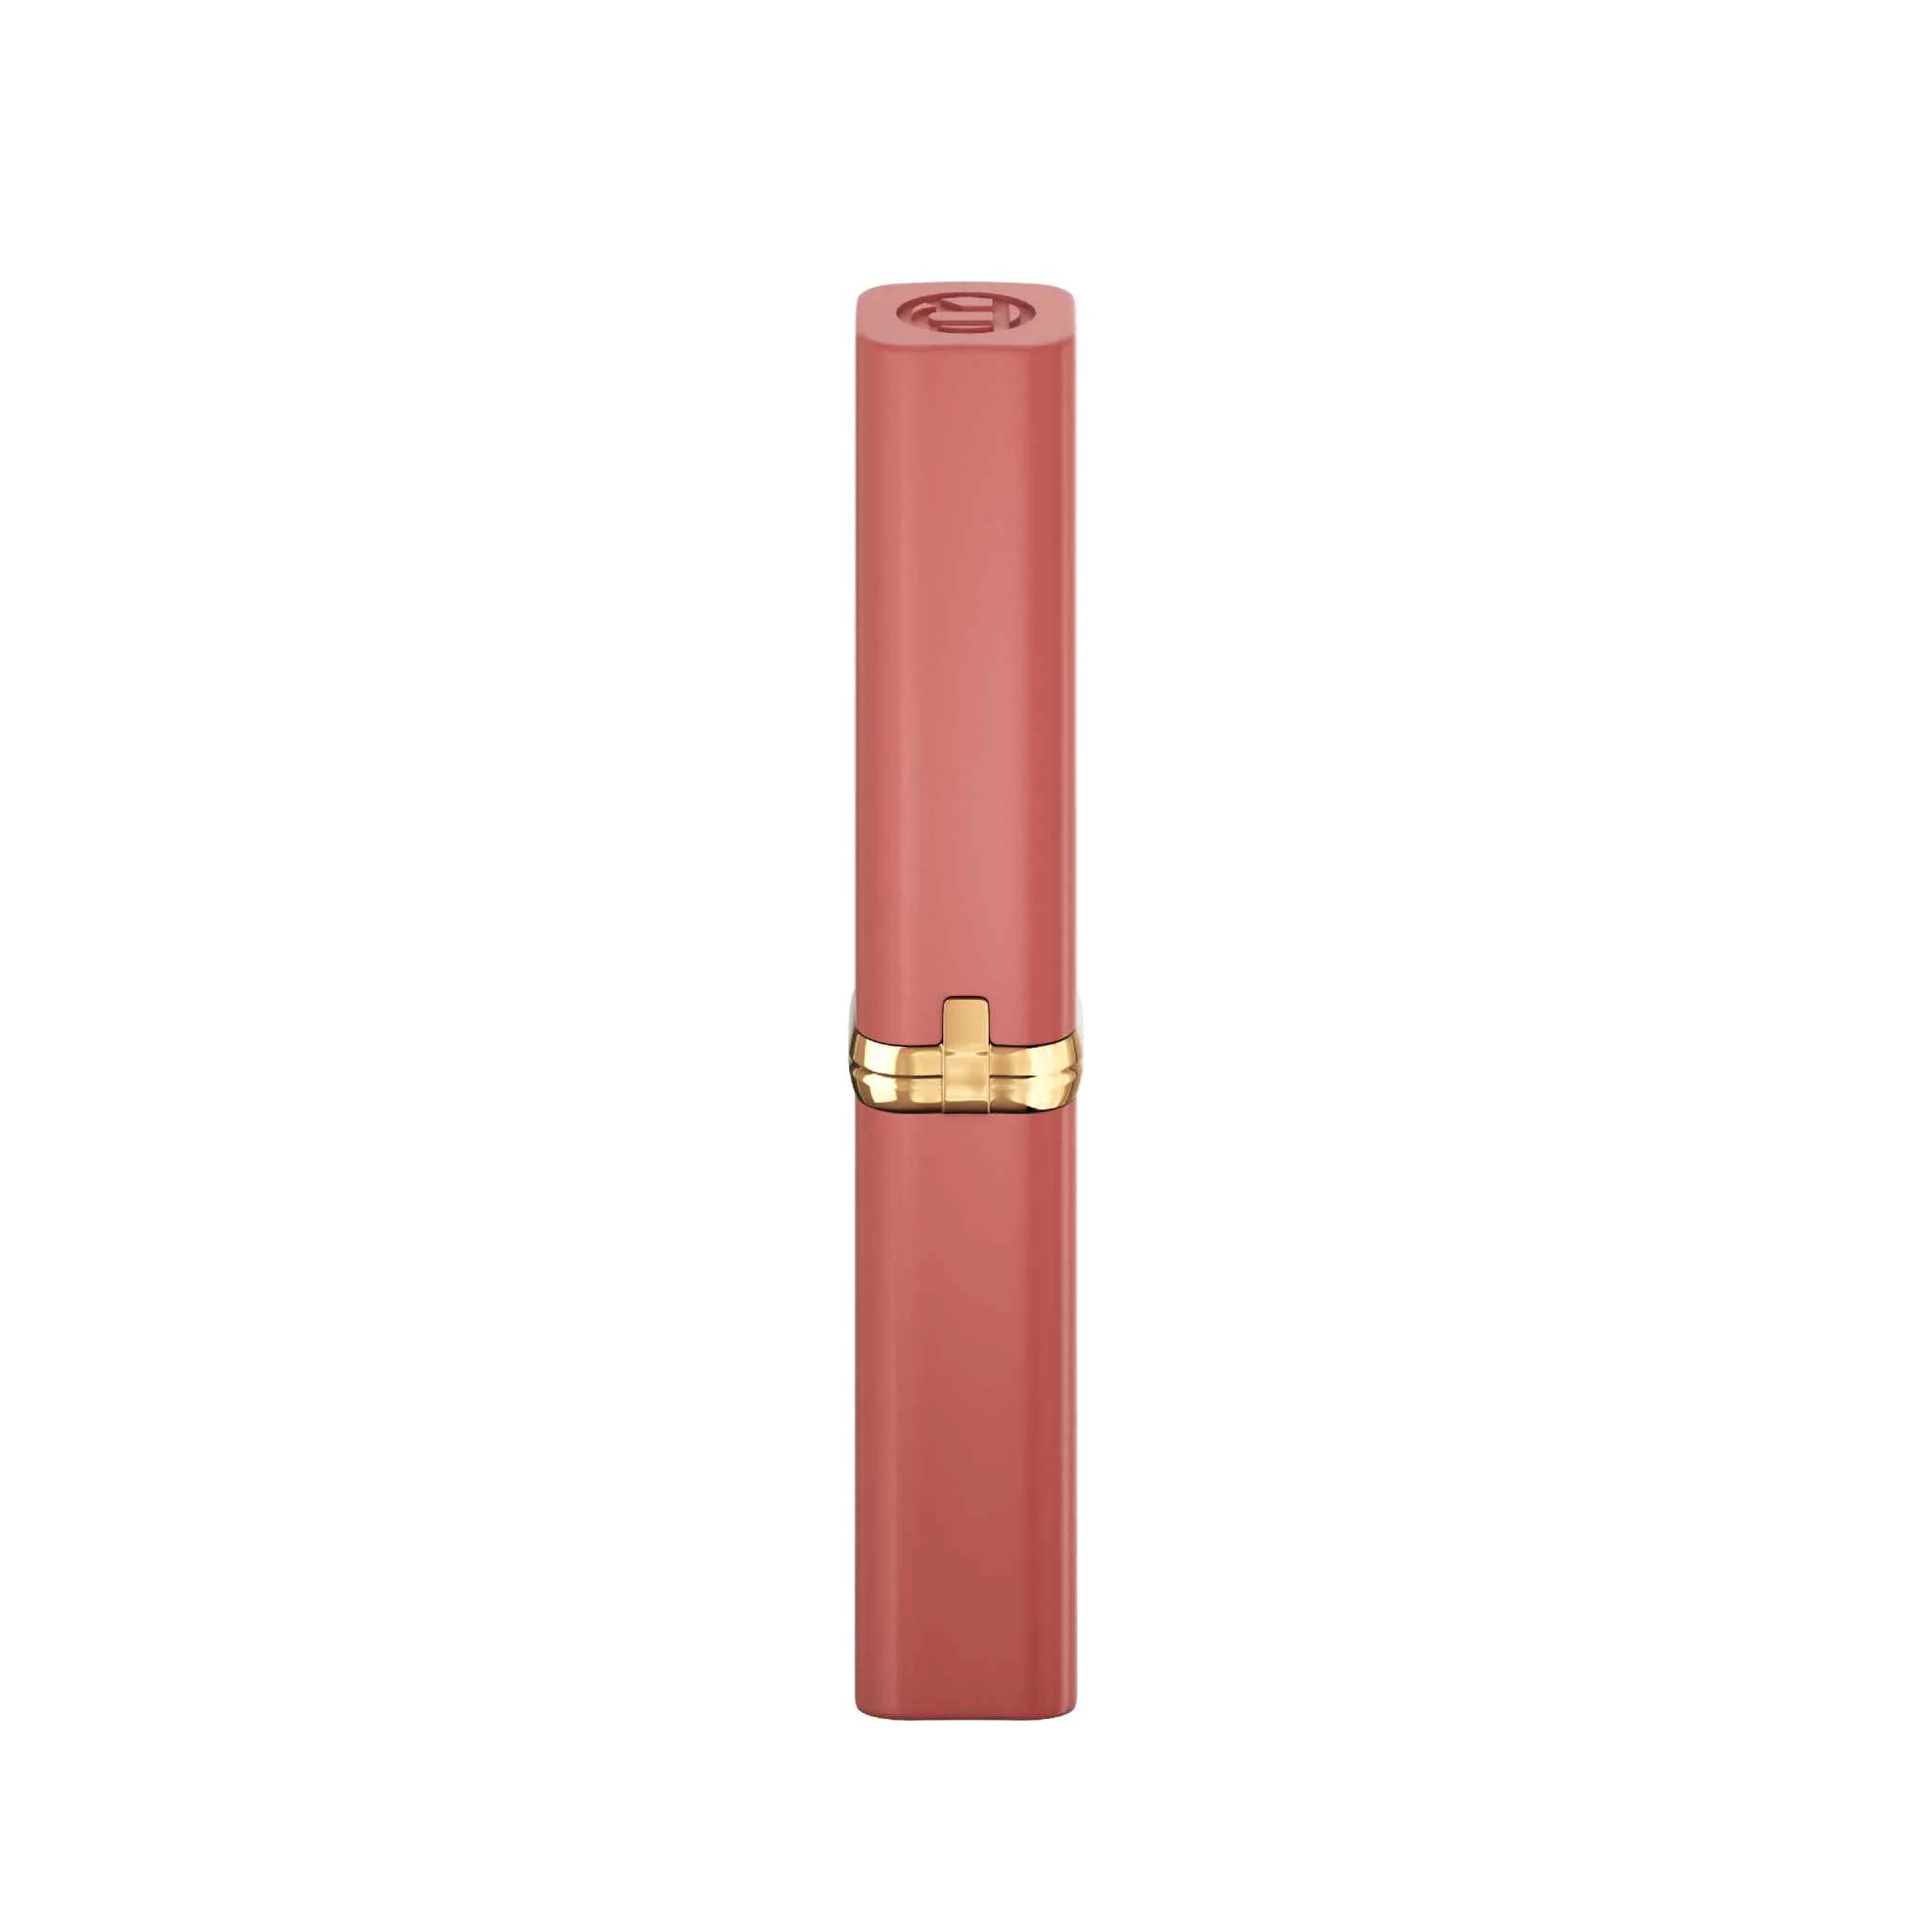 L´Oréal Paris Color Riche Intense Volume Matte Colors of Worth 600 Le Nude Audacious rúž, 1,8 g 1×1,8 g, rúž